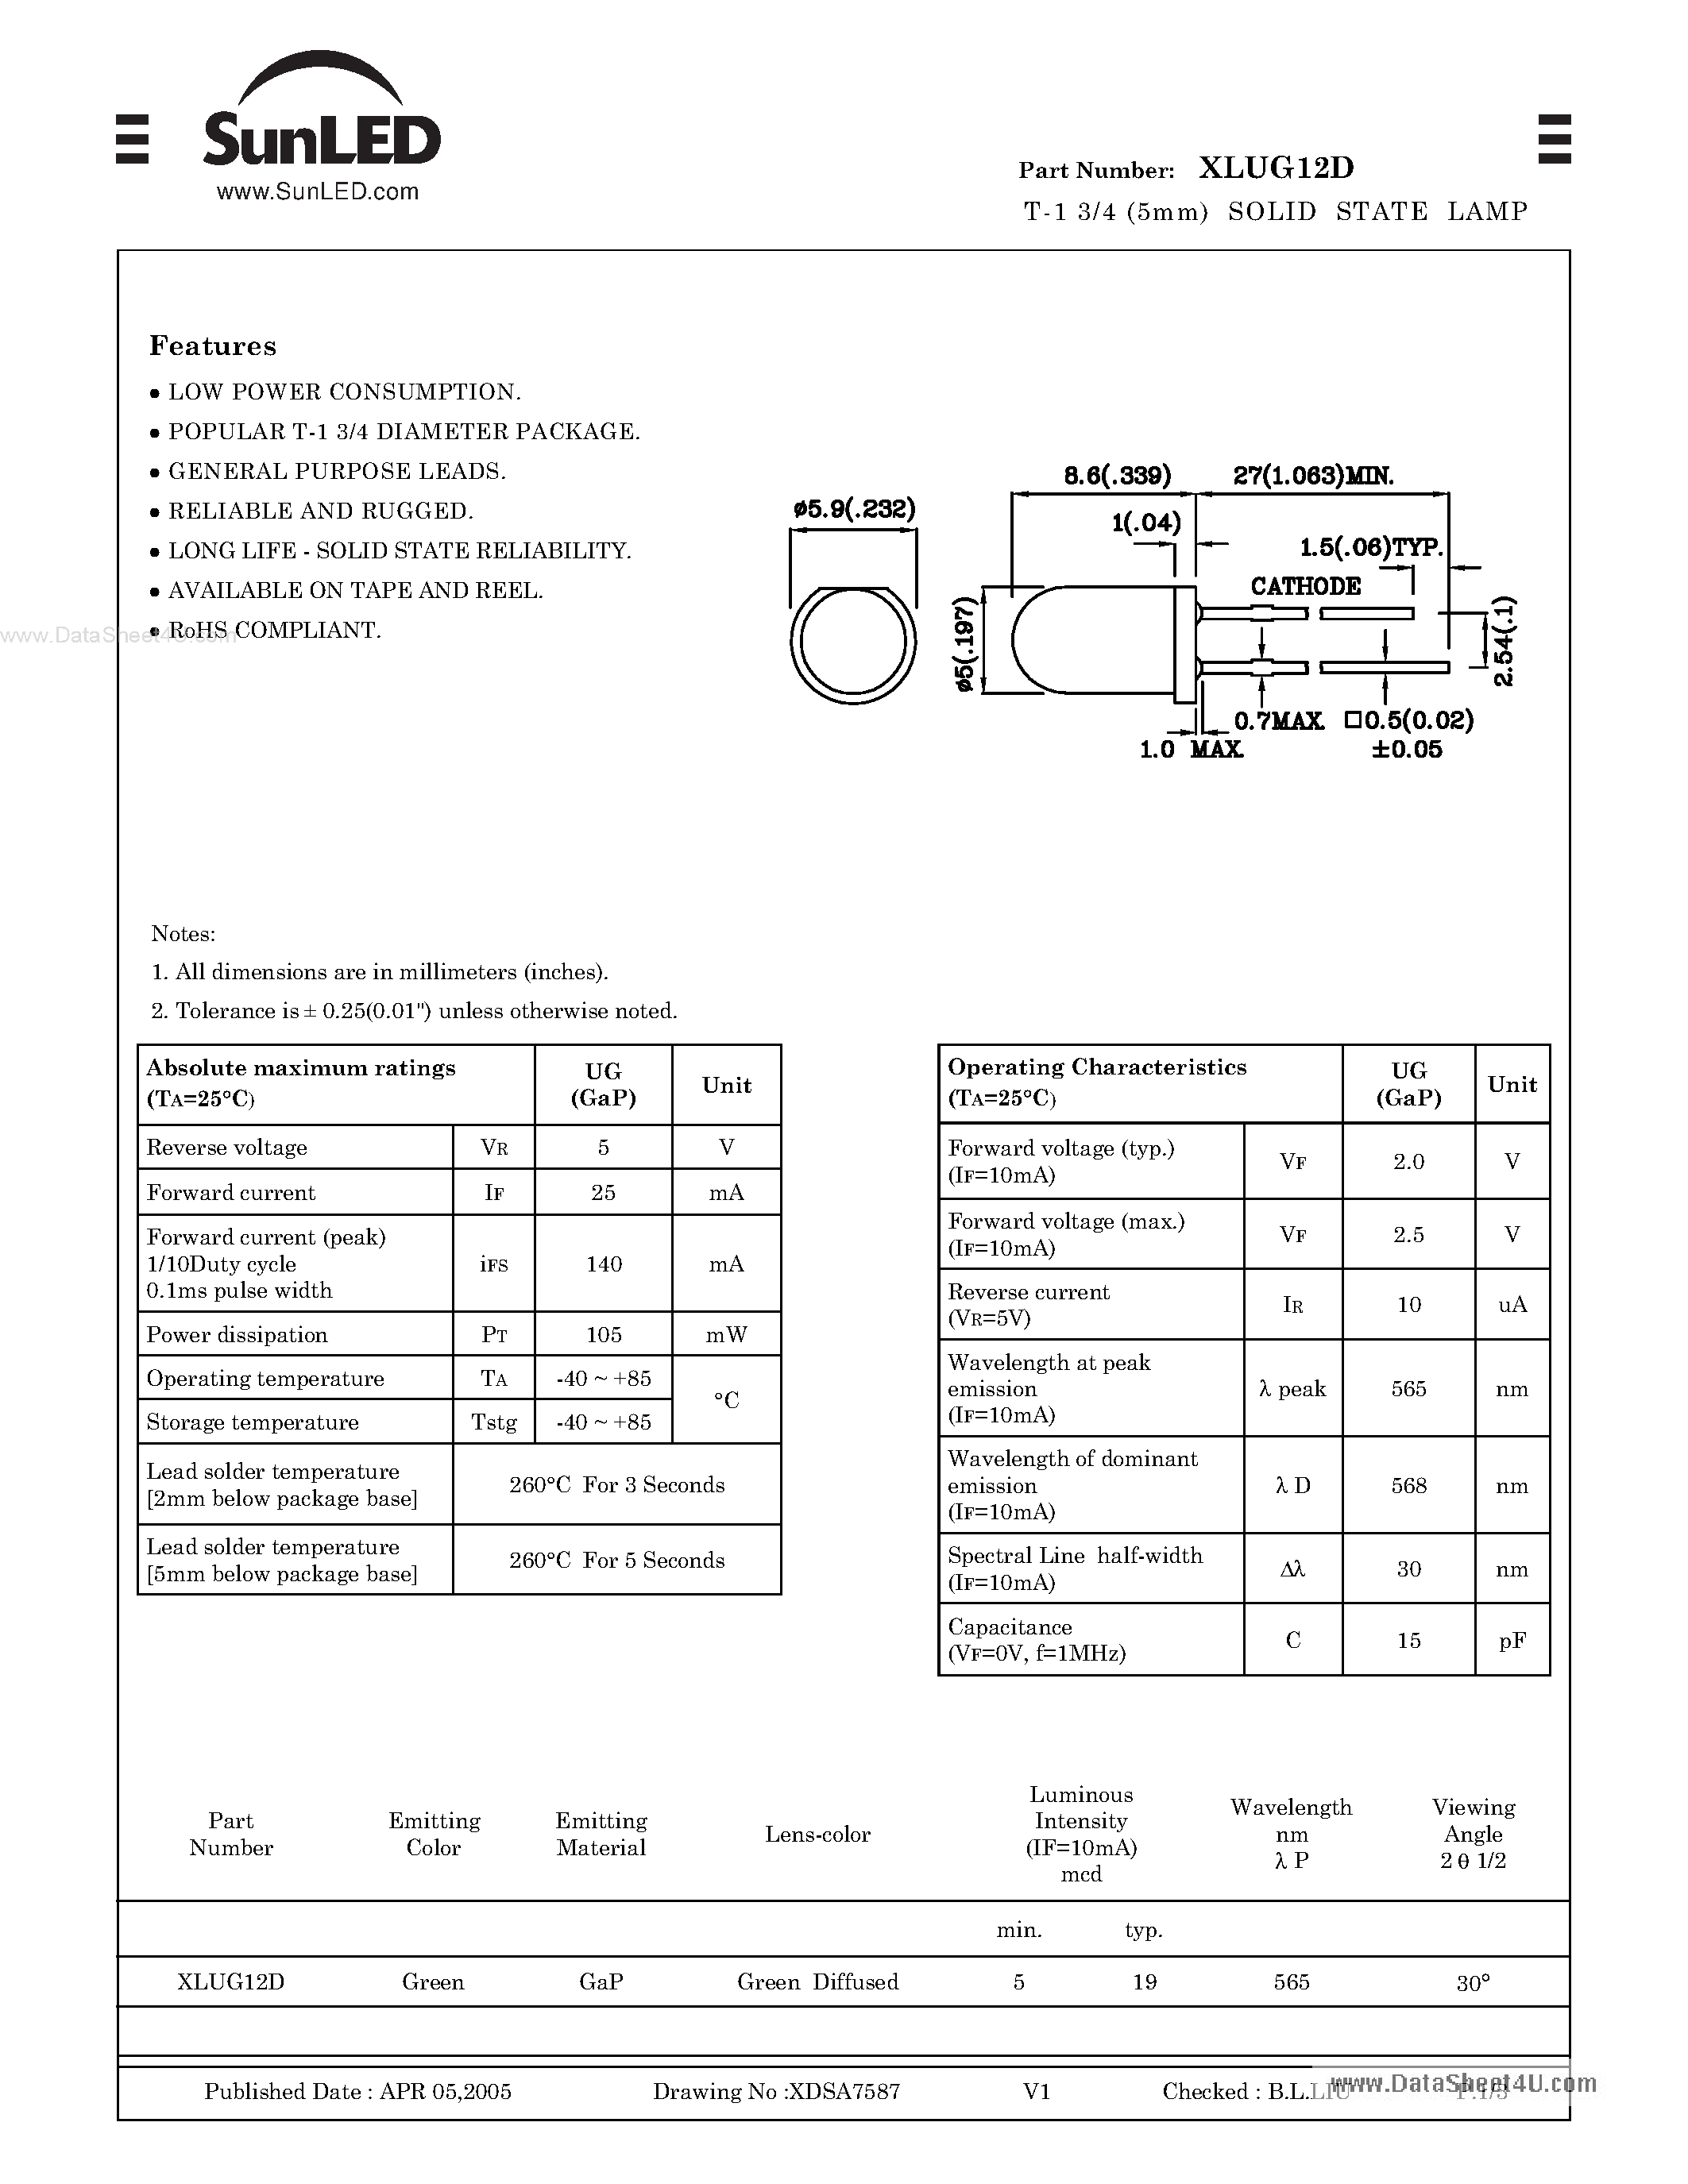 Даташит XLUG12D - T-1 3/4 (5mm) SOLID STATE LAMP страница 1